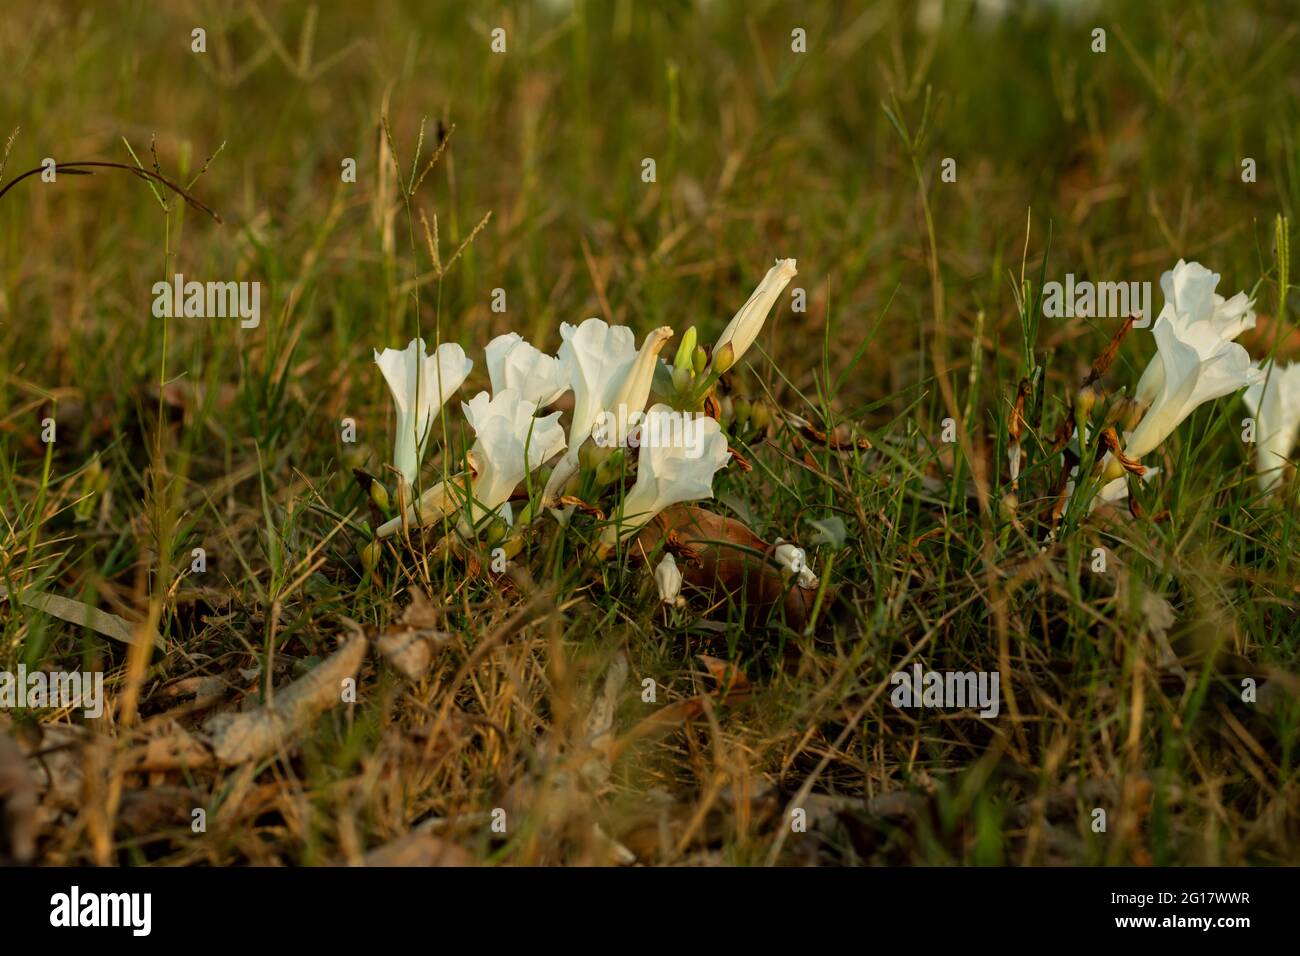 Le groupe de la fleur blanche de Bindweed de champ a des feuilles carrées avec un retrait peu profond au sommet qui alternent d'un à l'autre et de Bindweed de champ Banque D'Images